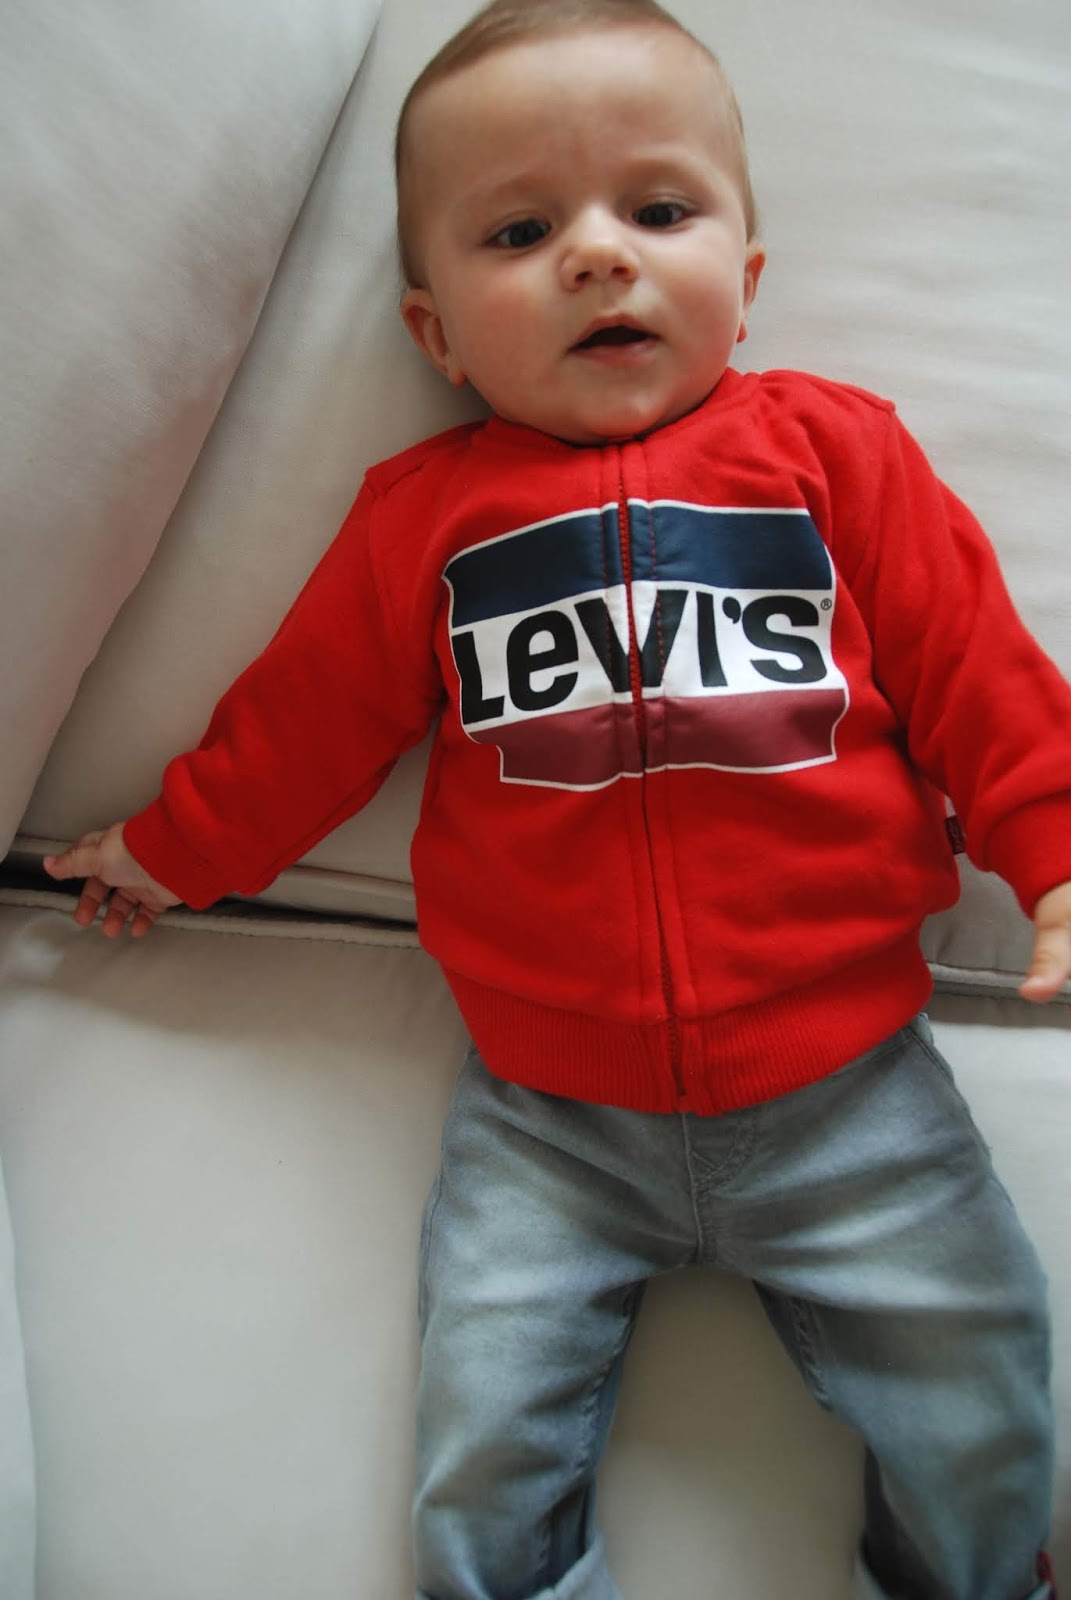 Come indossare un Levi's Total Look - Kidswear